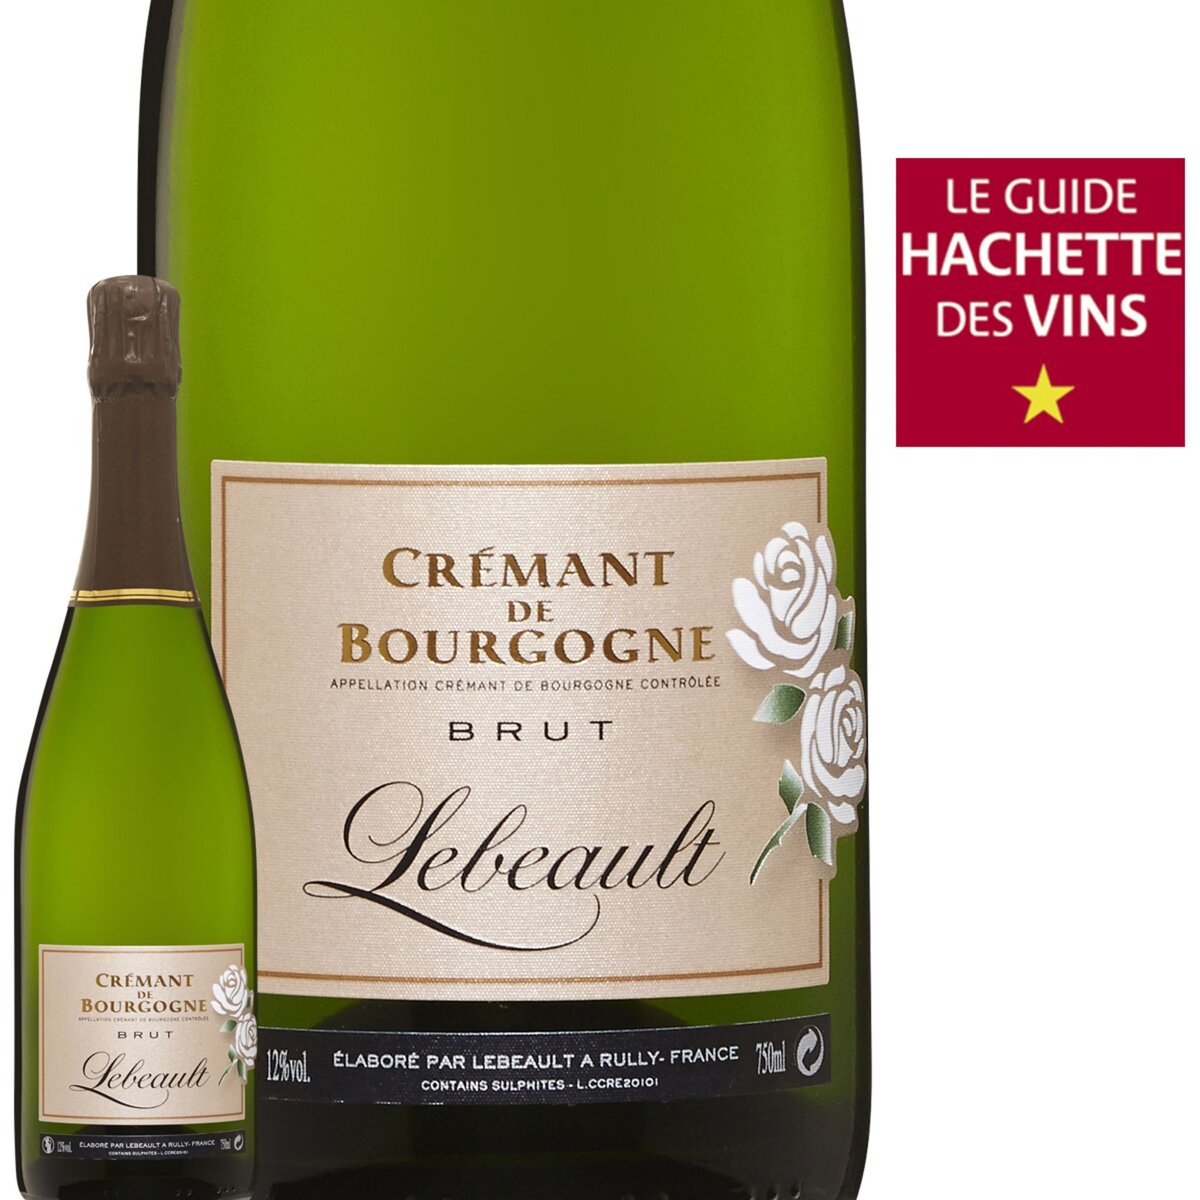 Lebeault Crémant de Bourgogne Brut 2014